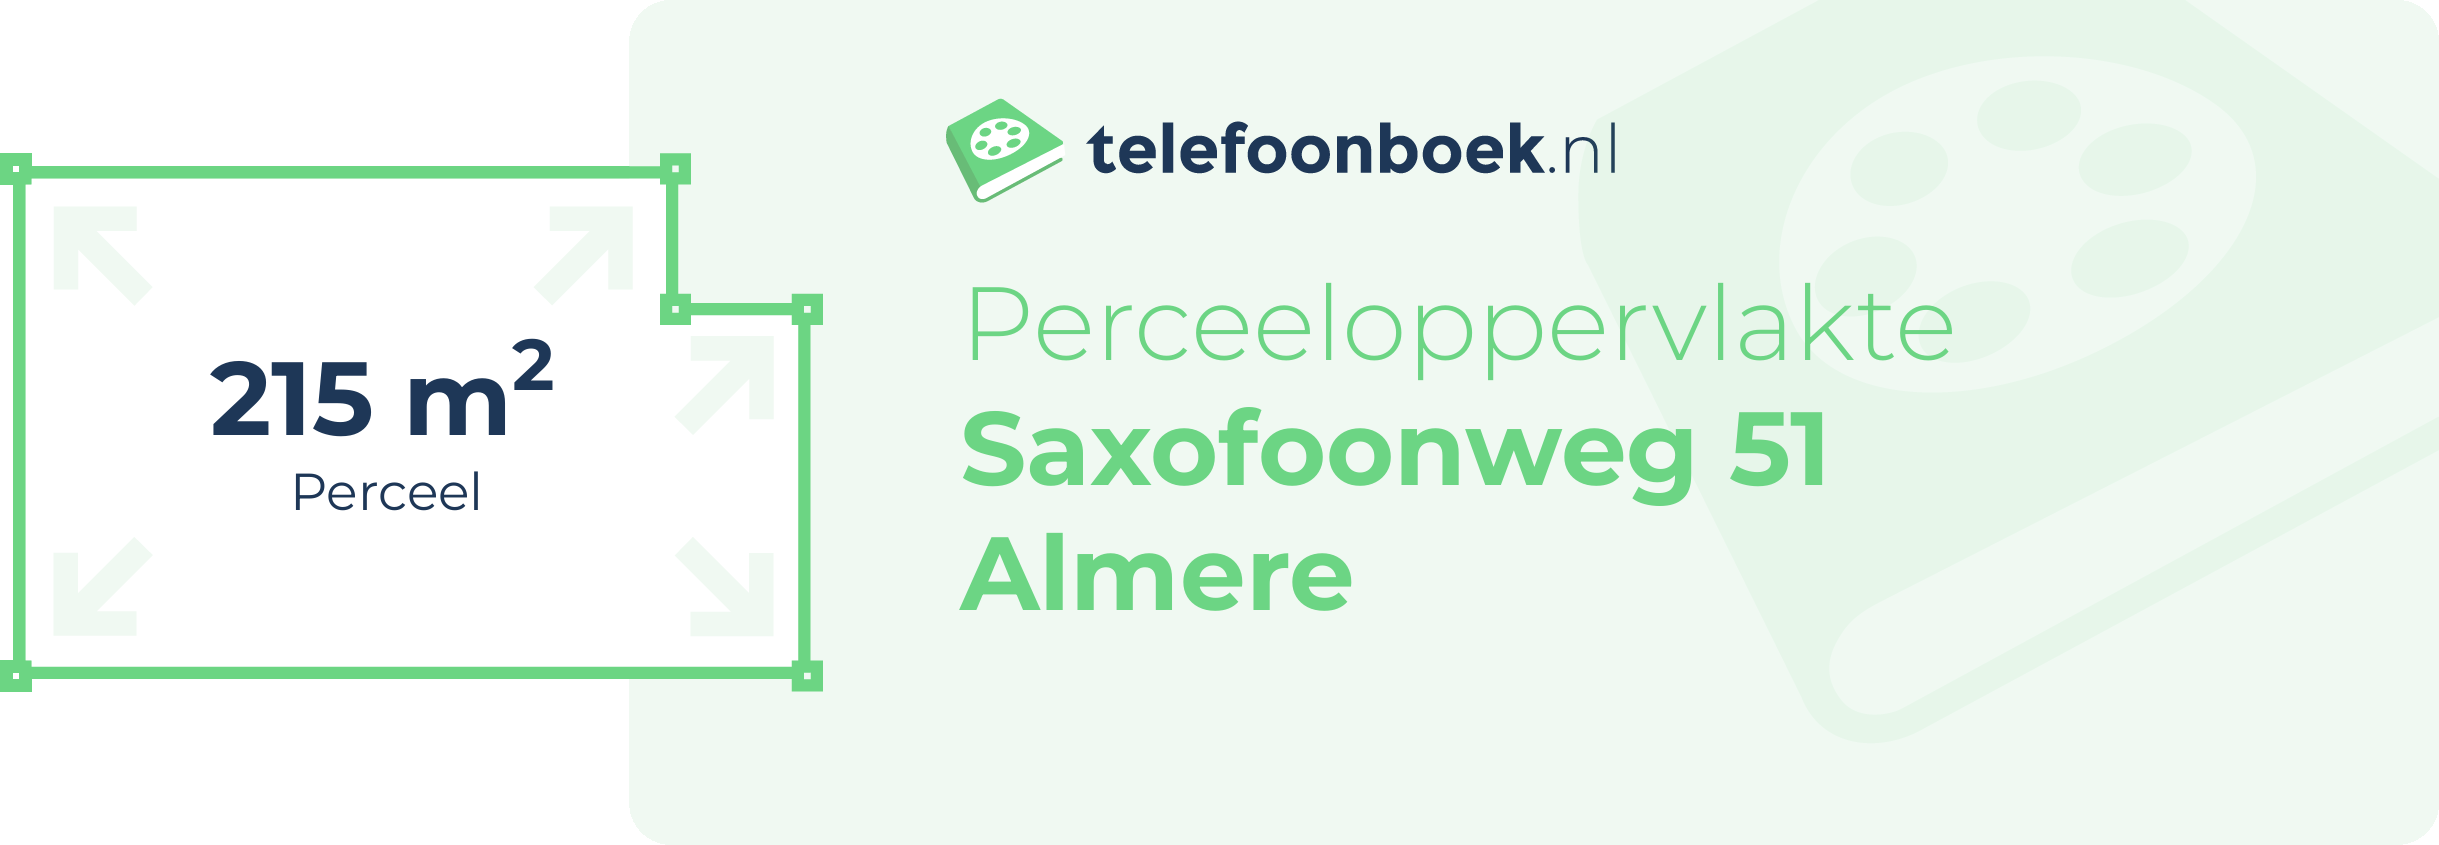 Perceeloppervlakte Saxofoonweg 51 Almere